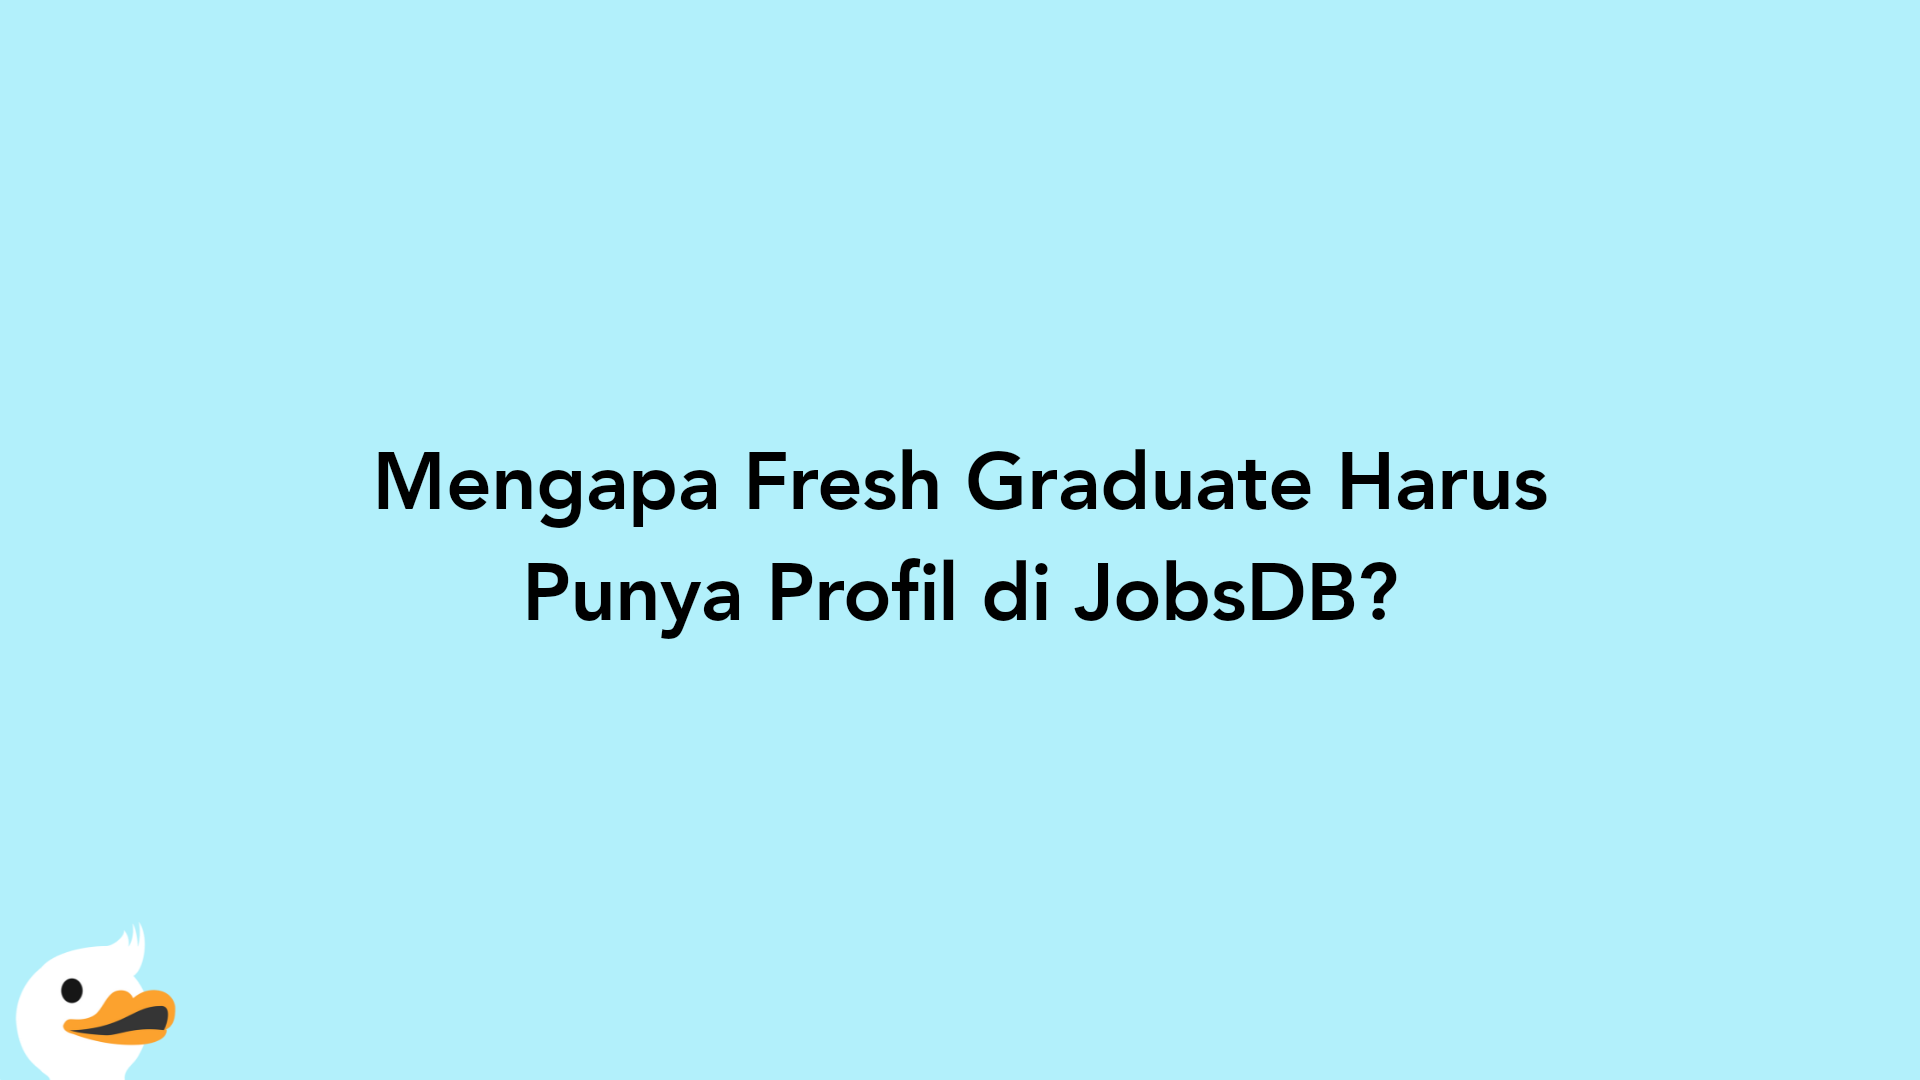 Mengapa Fresh Graduate Harus Punya Profil di JobsDB?